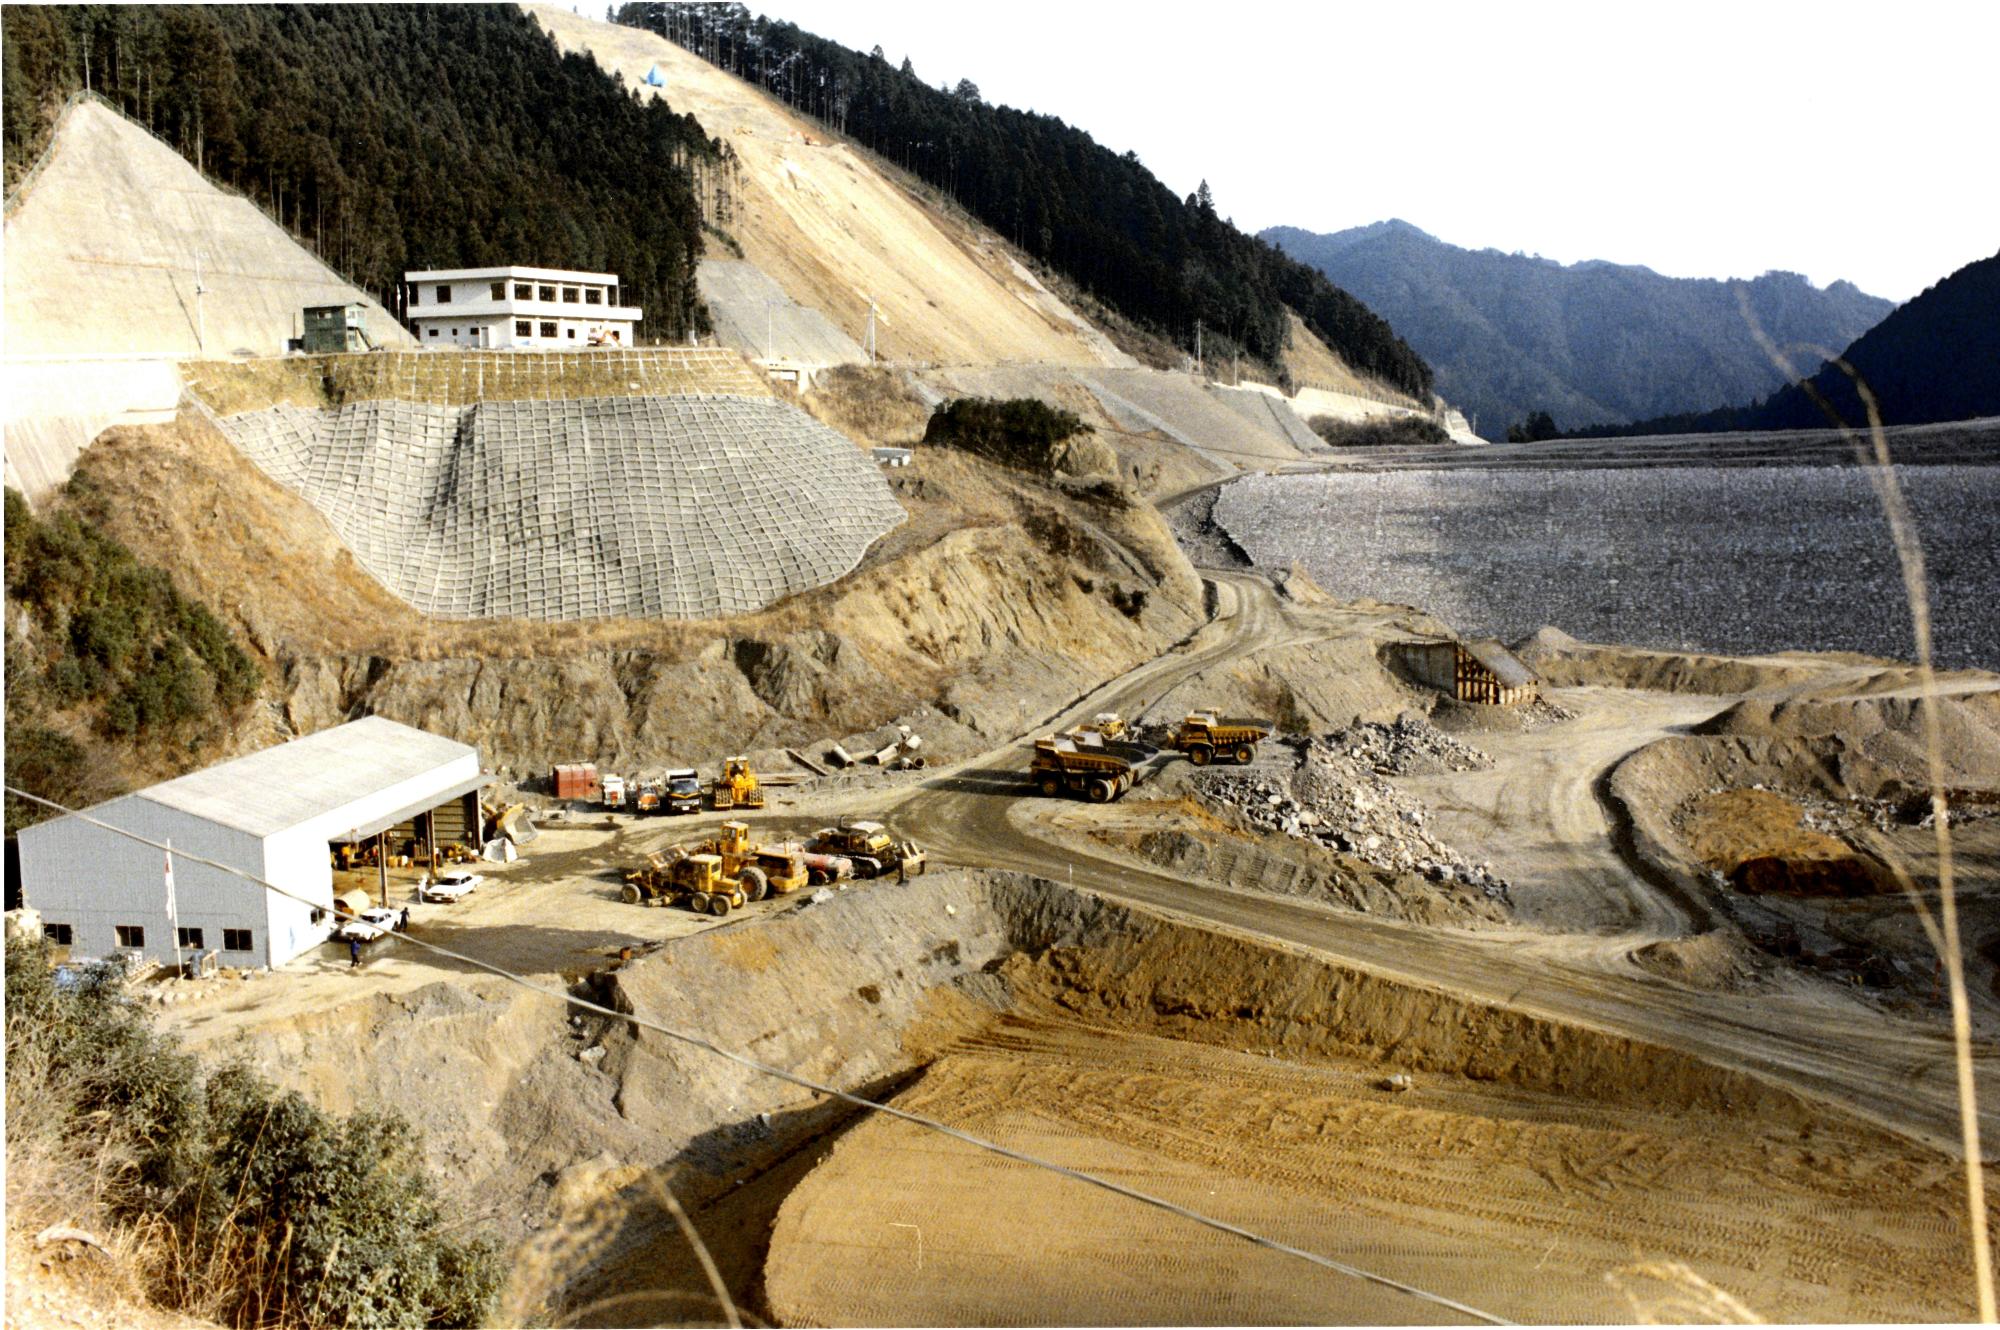 現在、湖畔に立つ有間ダム管理事務所周辺の工事の様子が描かれています。